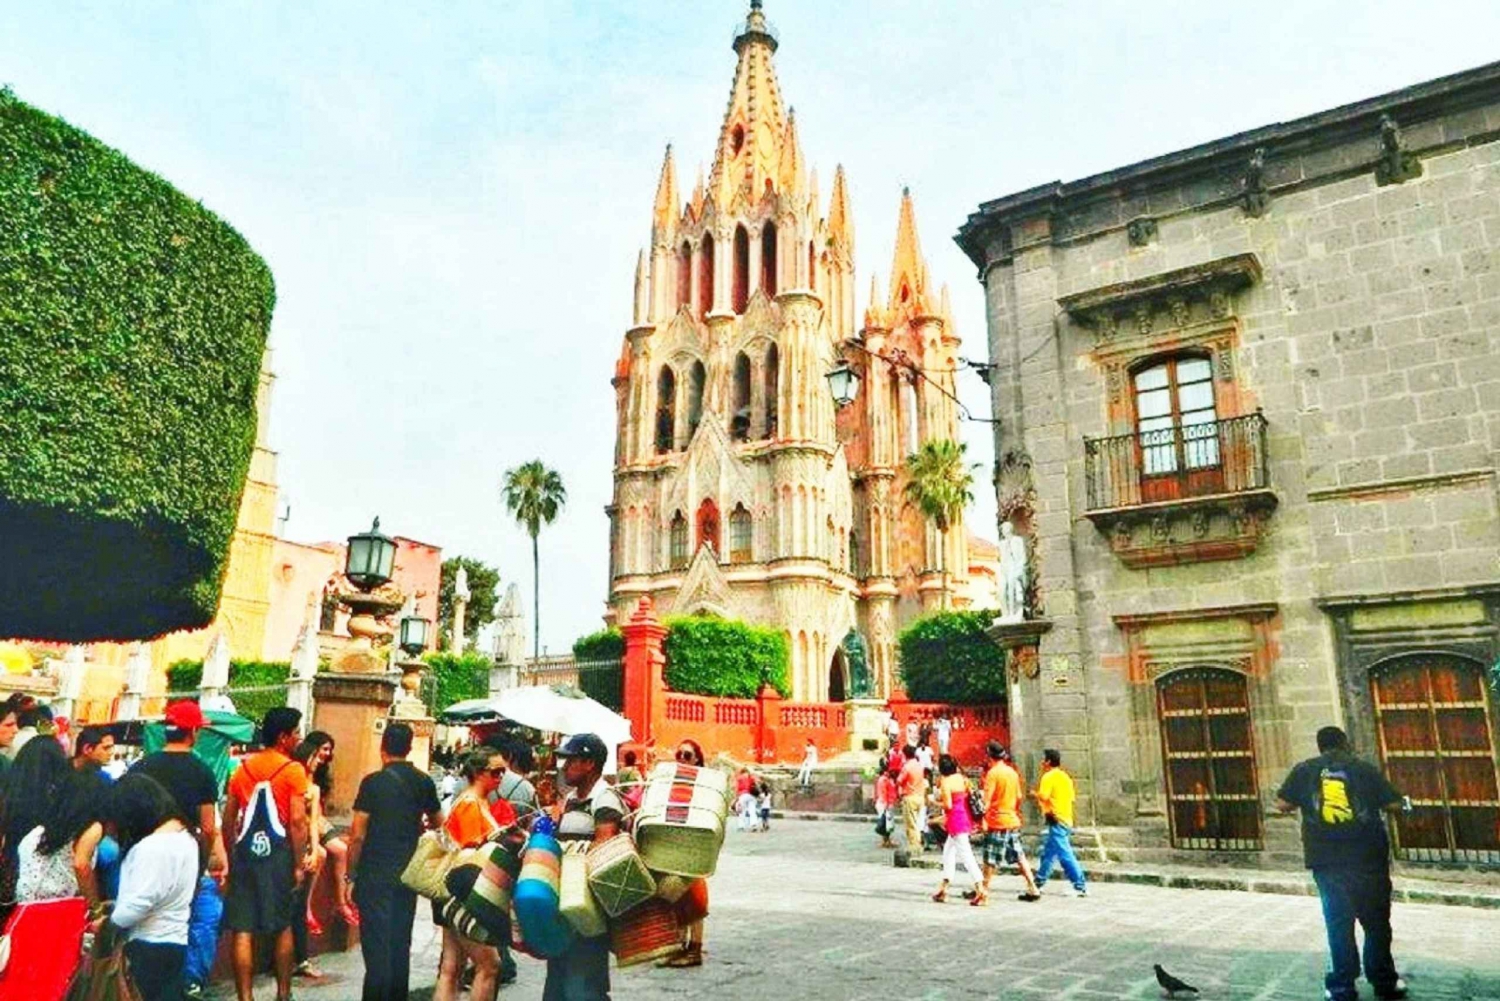 From Mexico City: San Miguel de Allende Instagram Tour